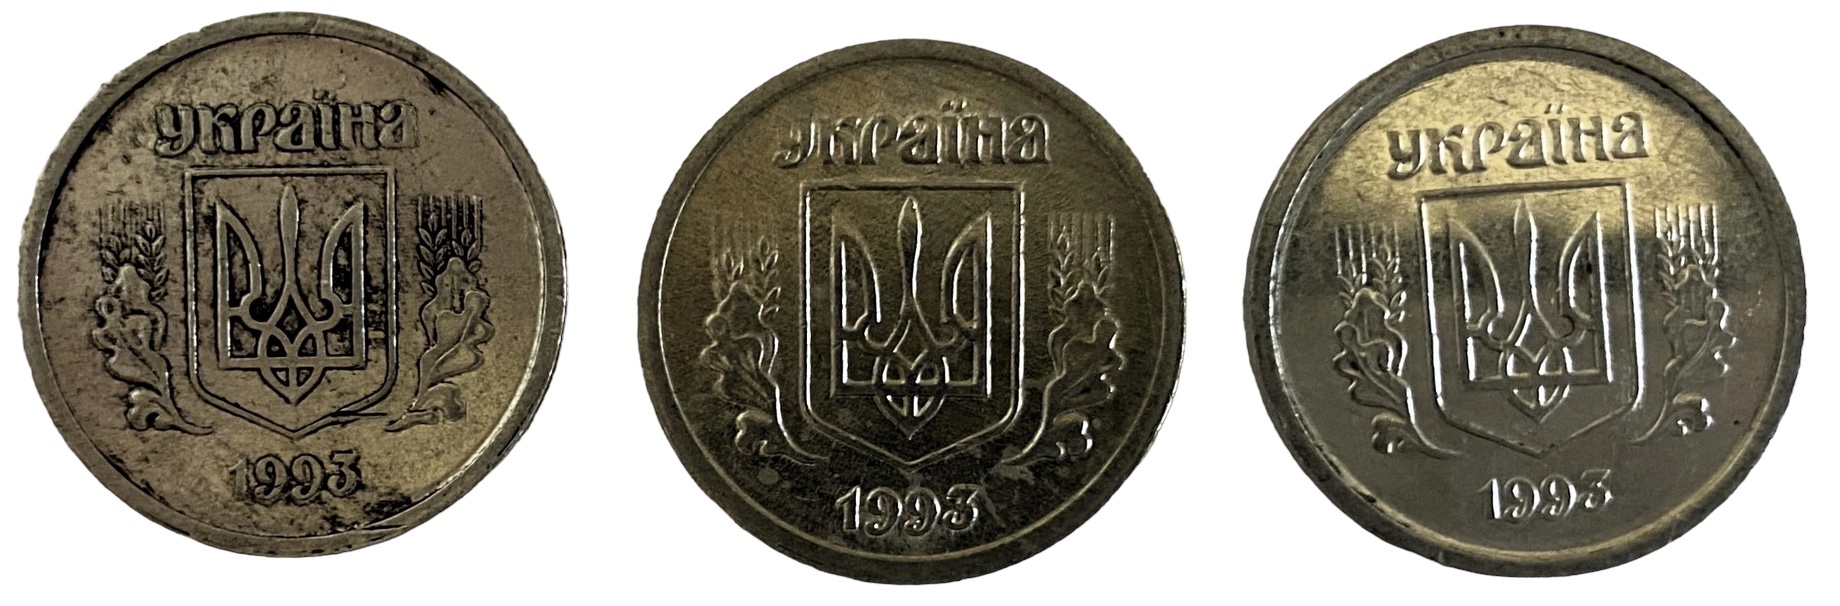 Иностранная монета 5 копеек 1993 год Украина